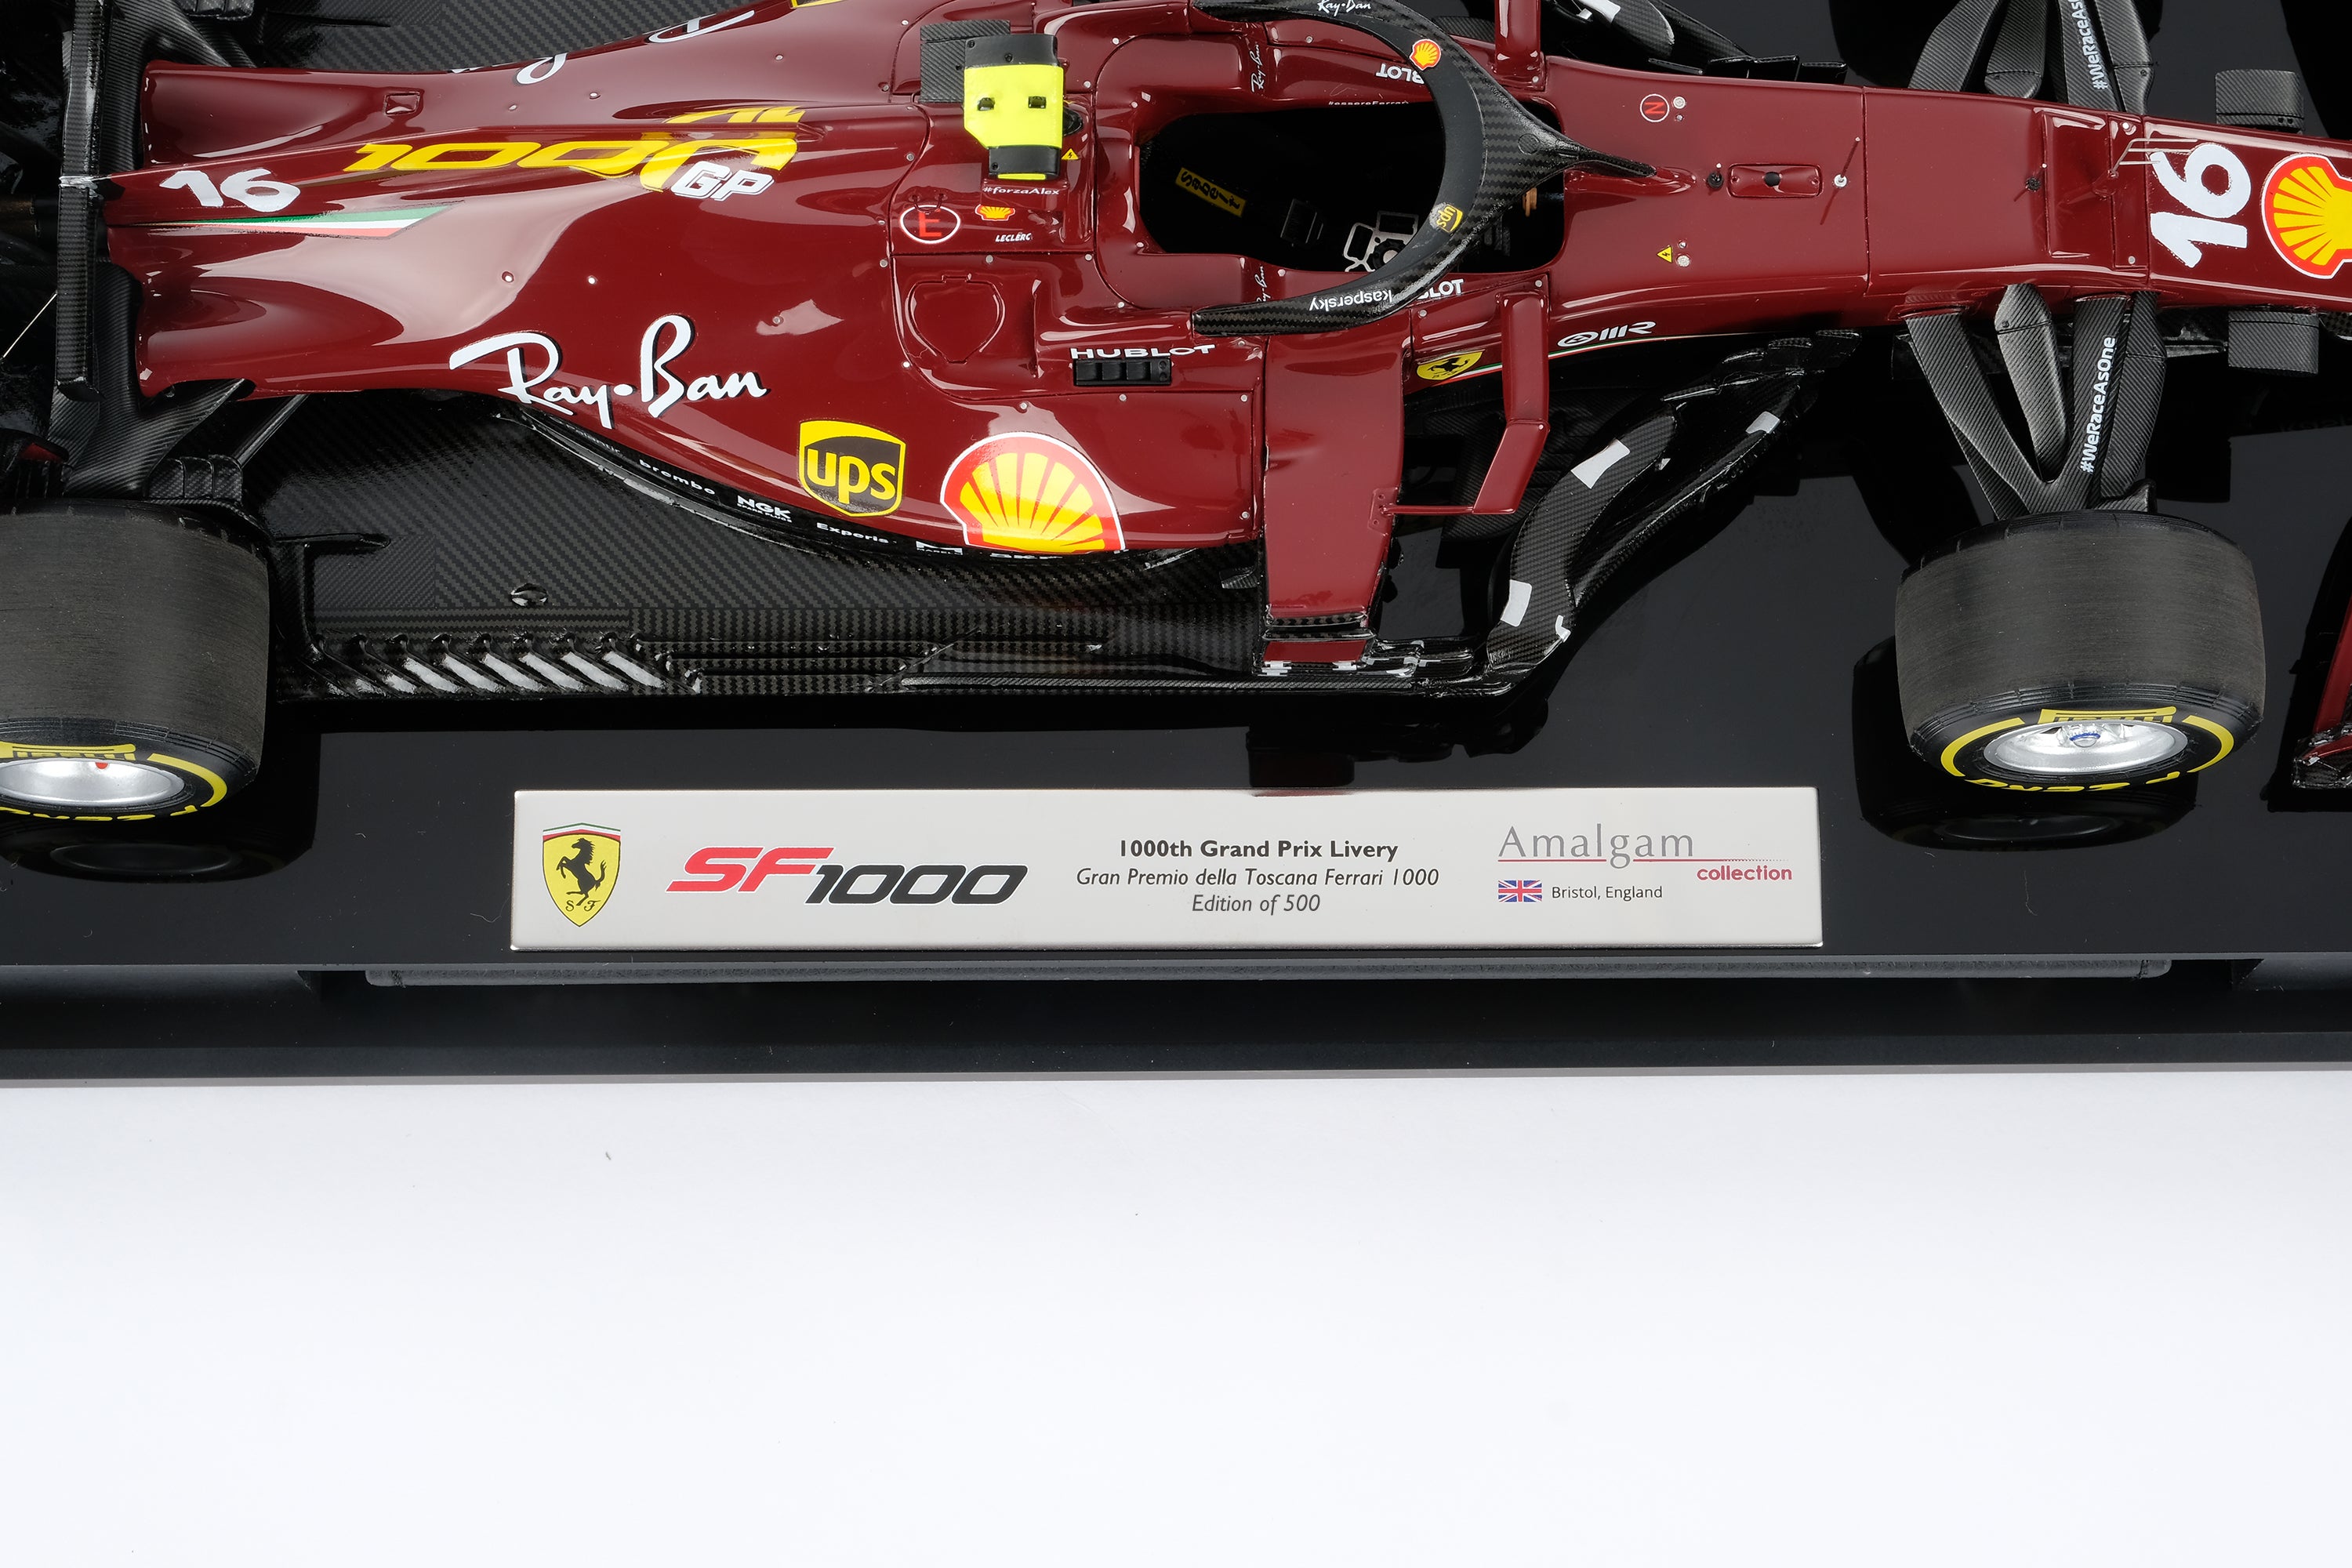 フェラーリSF1000-1000回目のグランプリリバリー-2020年トスカーナグランプリ – Amalgam Collection